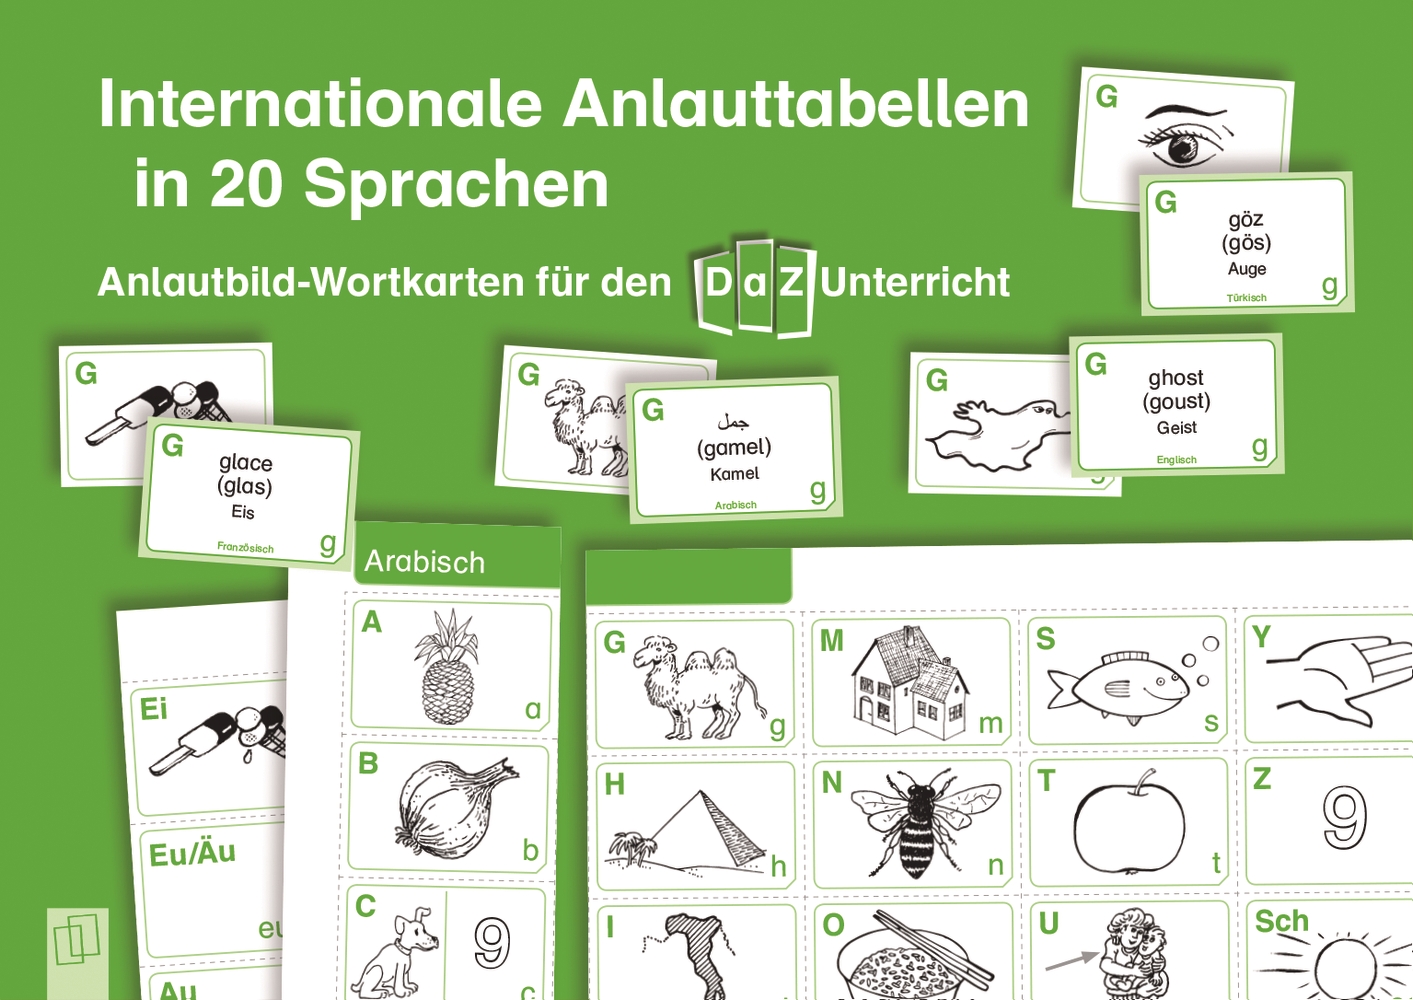 Internationale Anlauttabellen in 20 Sprachen